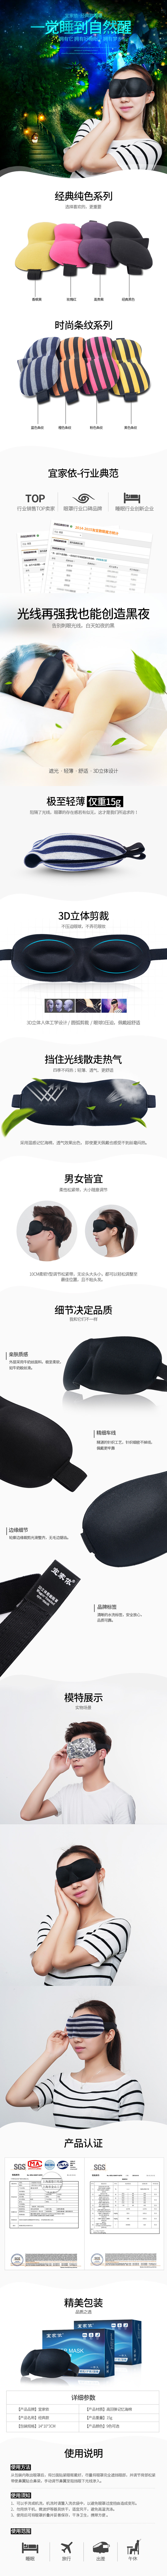 淘宝美工老庄3D立体透气睡眠罩遮光护眼罩作品